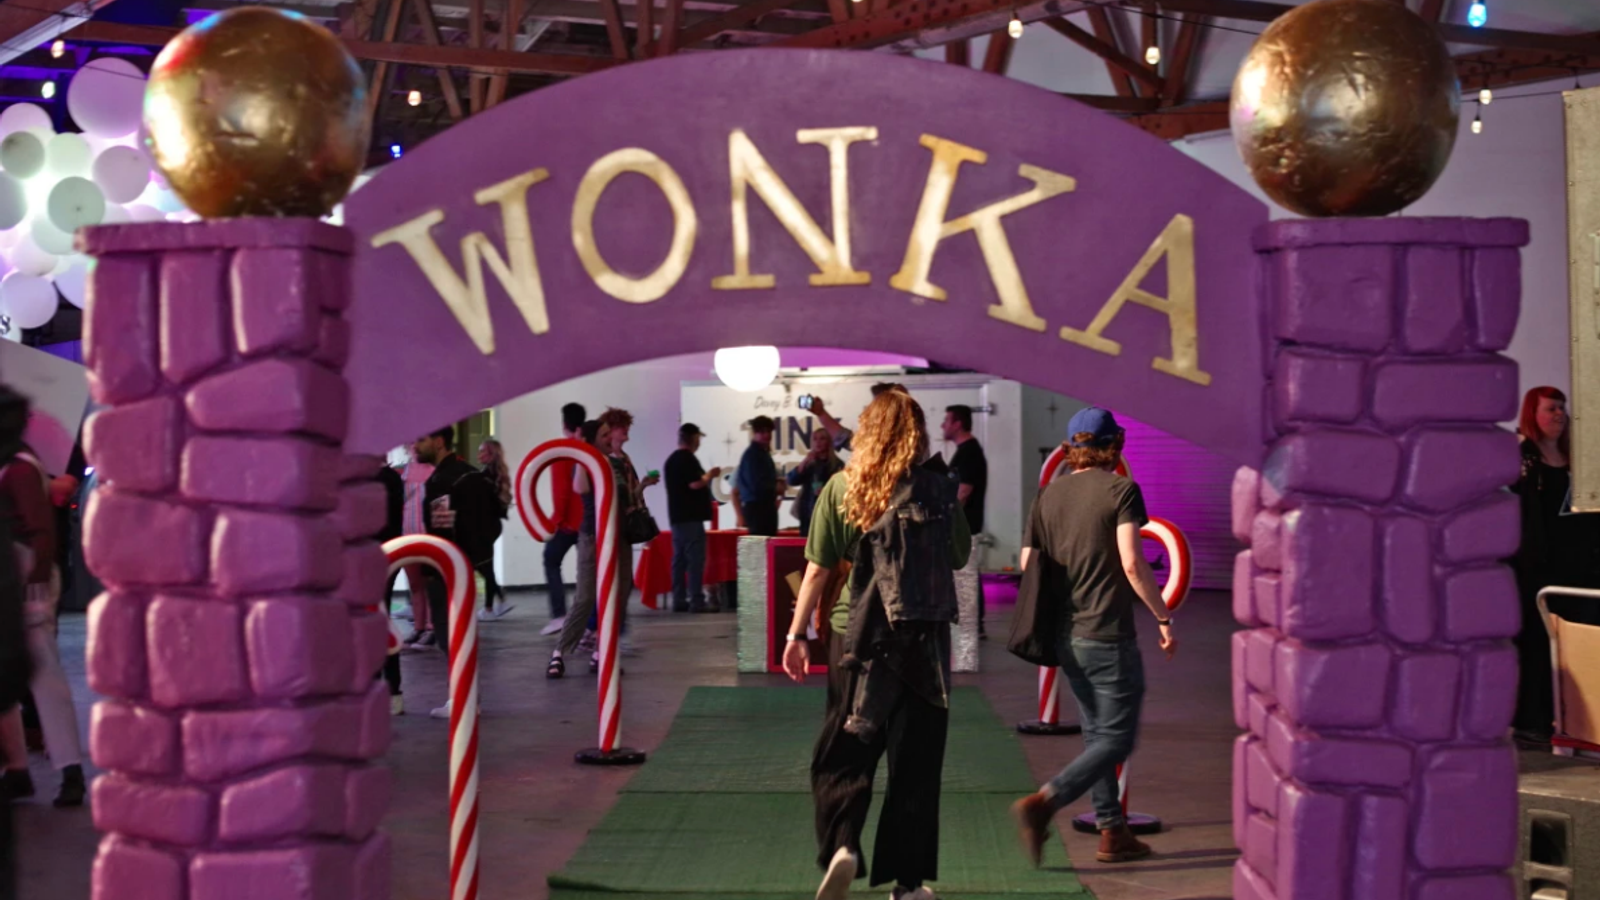 Вдъхновено от Wonka шоколадово изживяване в Лос Анджелис, което имитира събитието в Глазгоу, привлича десетки